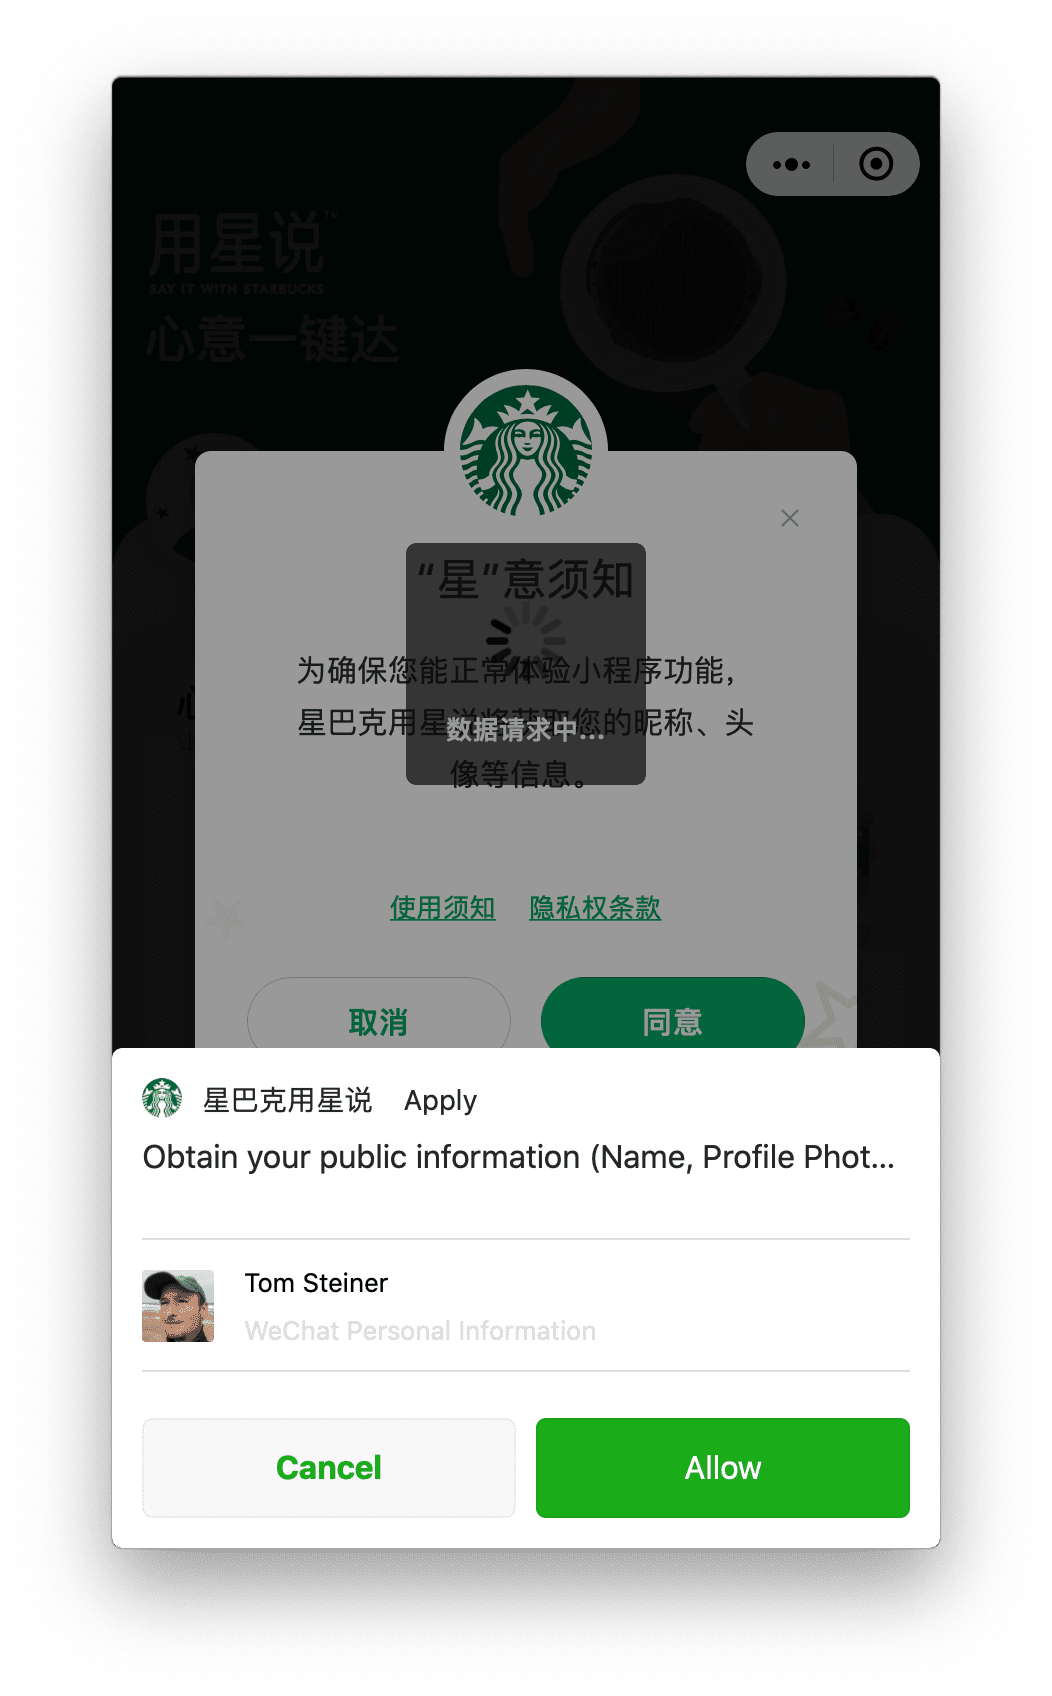 แอป Starbucks ขนาดเล็กที่ทำงานใน macOS จะขอสิทธิ์โปรไฟล์ผู้ใช้ซึ่งผู้ใช้สามารถให้สิทธิ์ได้ผ่านข้อความแจ้งที่แสดงด้านล่าง